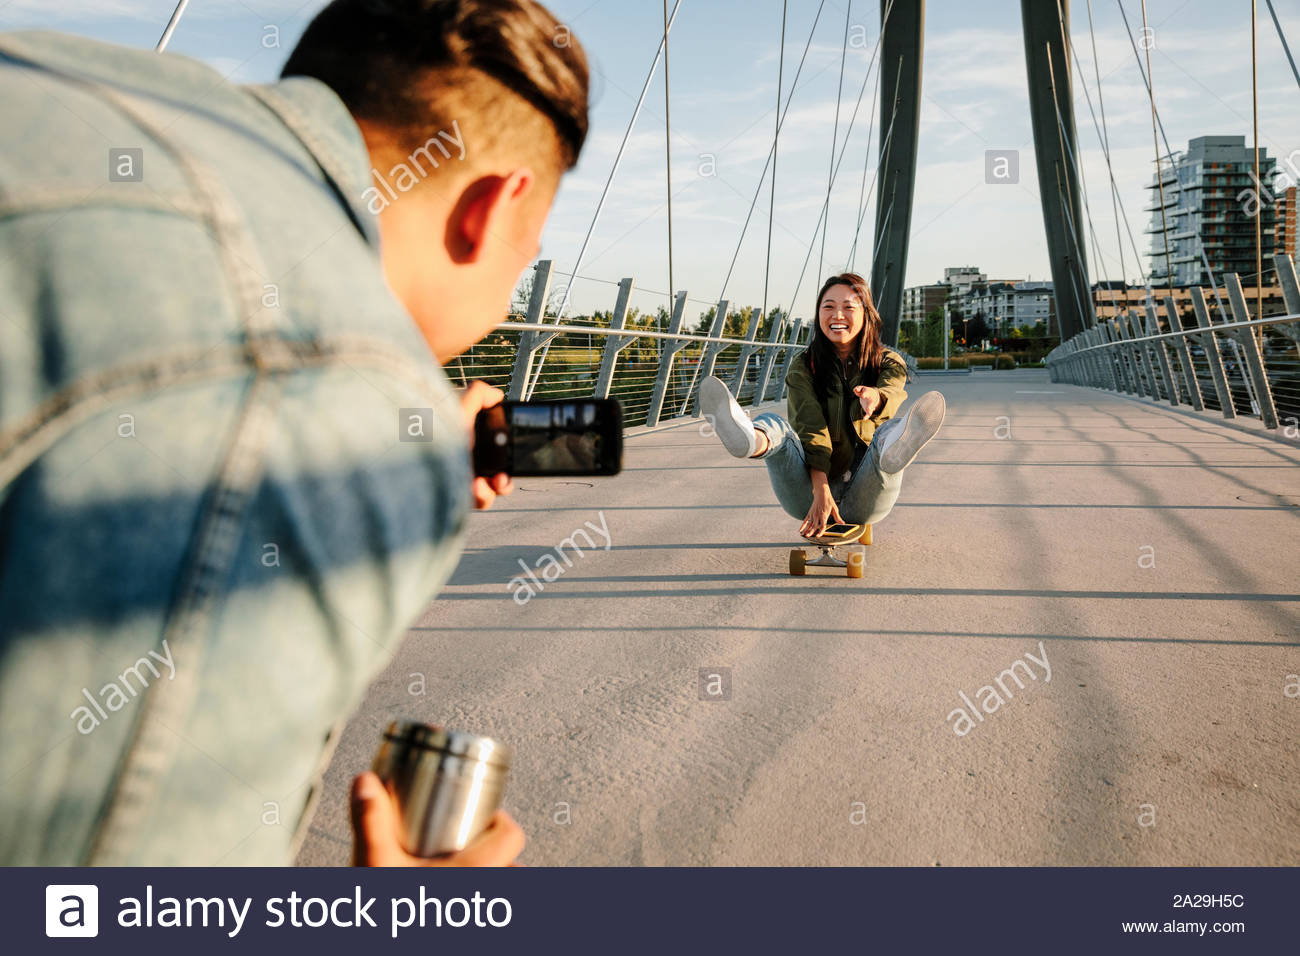 Jeune homme au téléphone appareil photo photographier amie ludique sur planche Banque D'Images